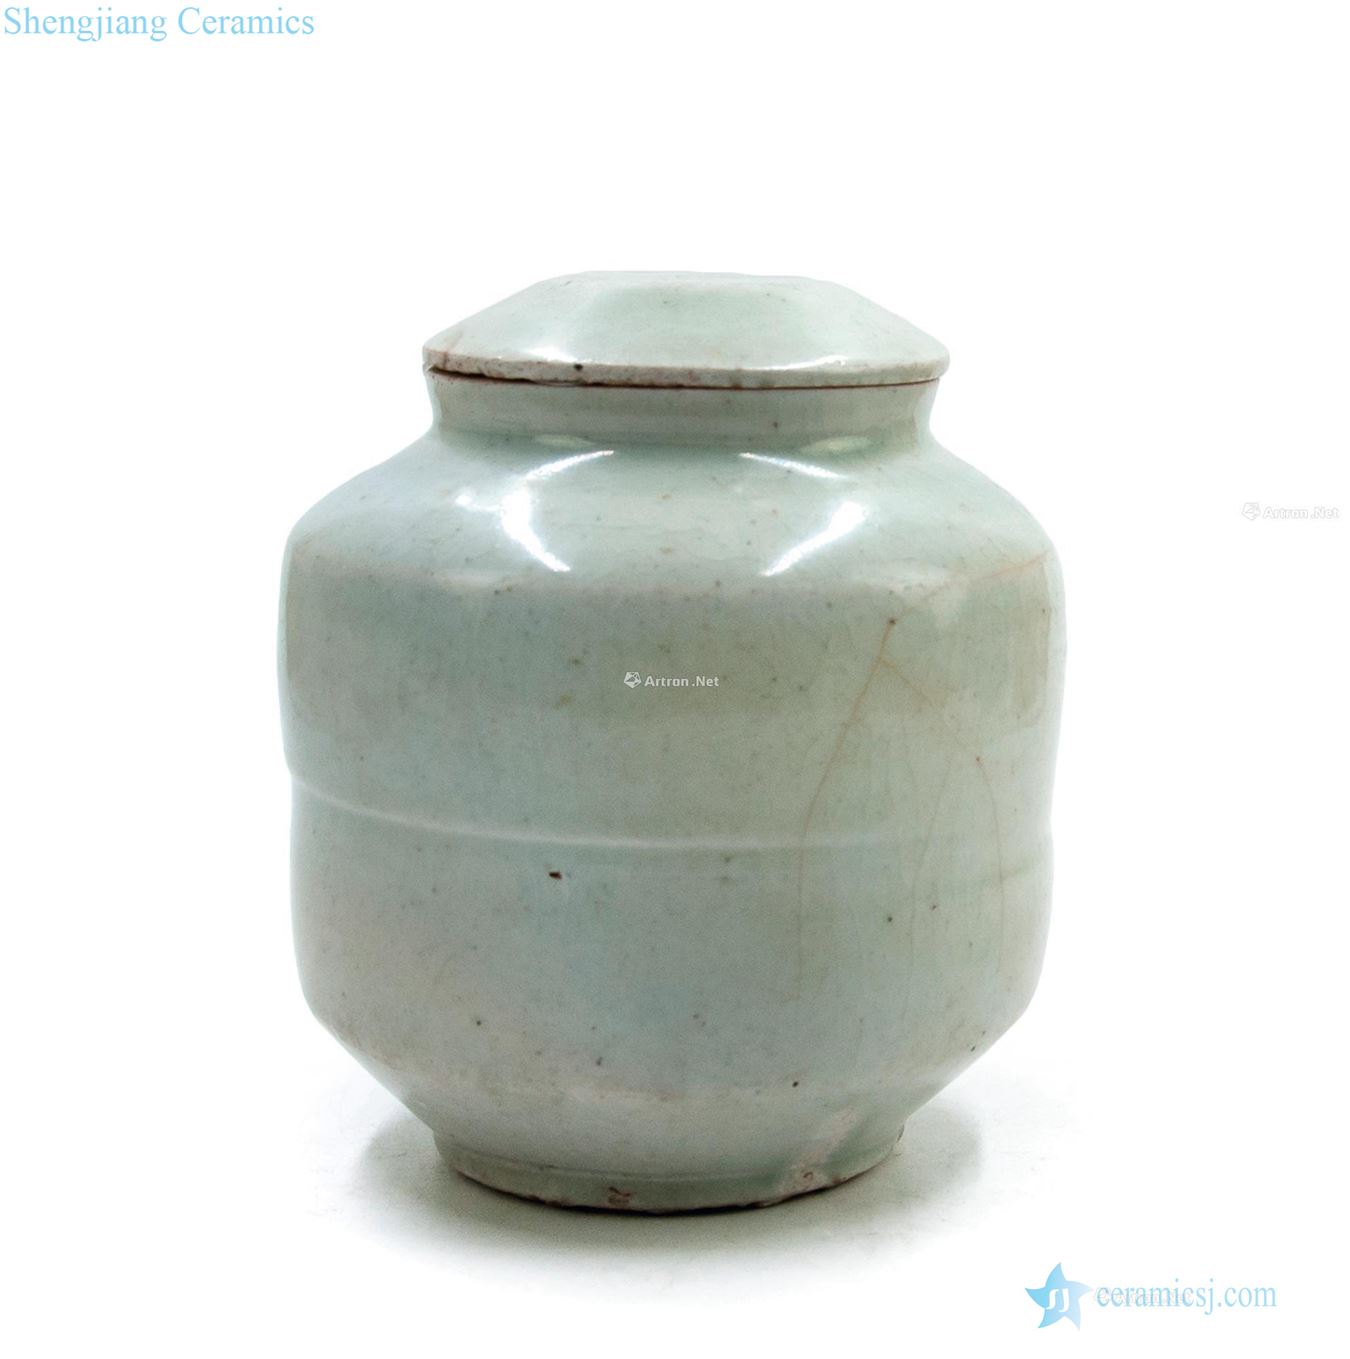 Koryo period (918-1392), white glazed pot